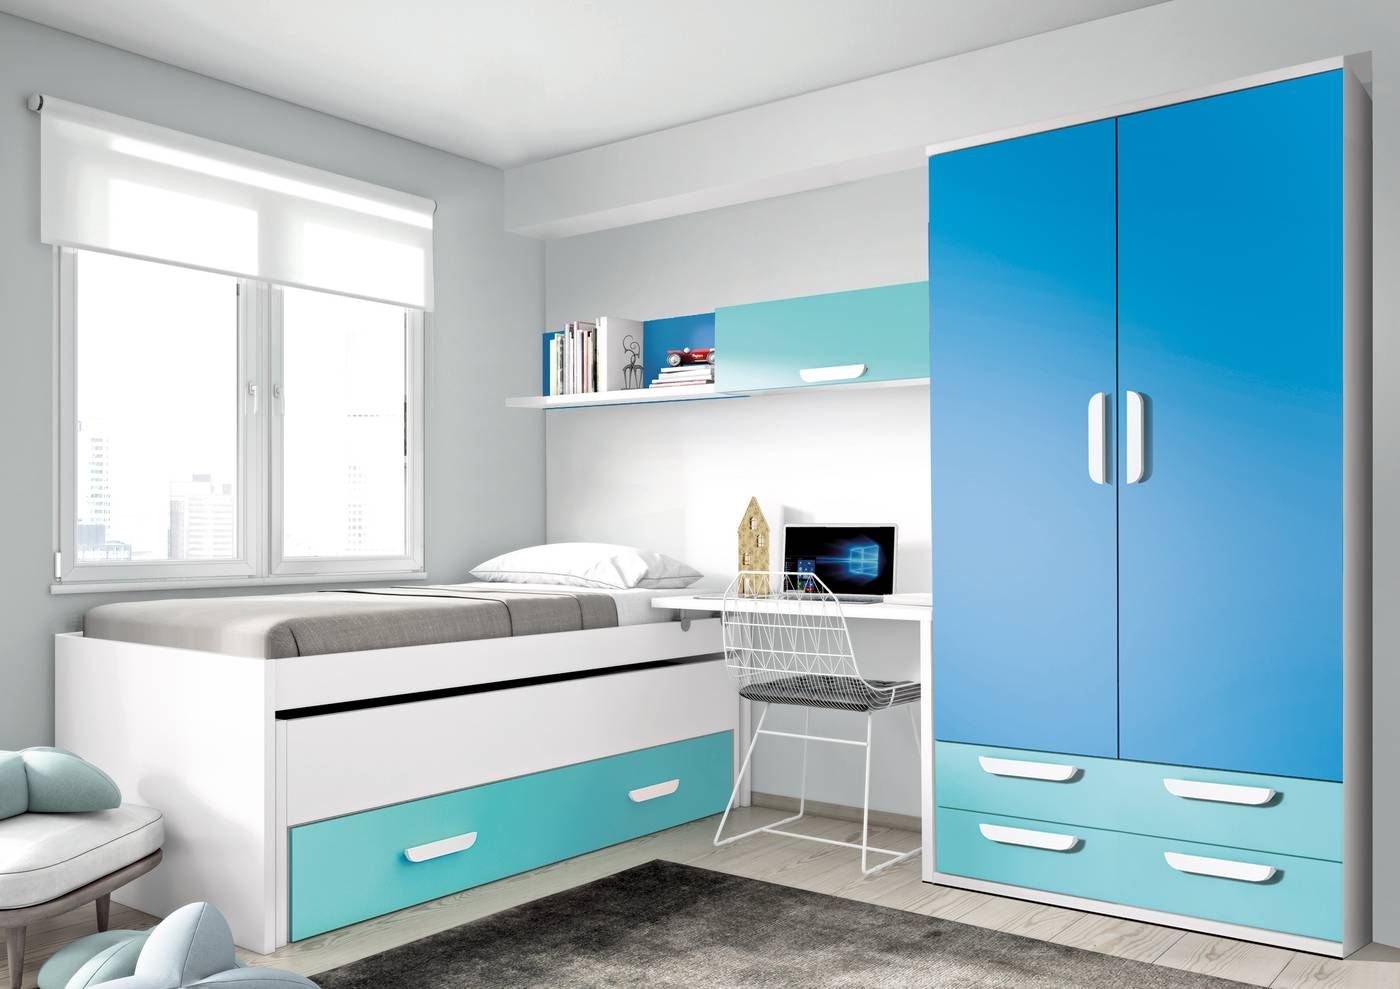 Habitación juvenil formada por cama compacto, mesa, estante y altillo.